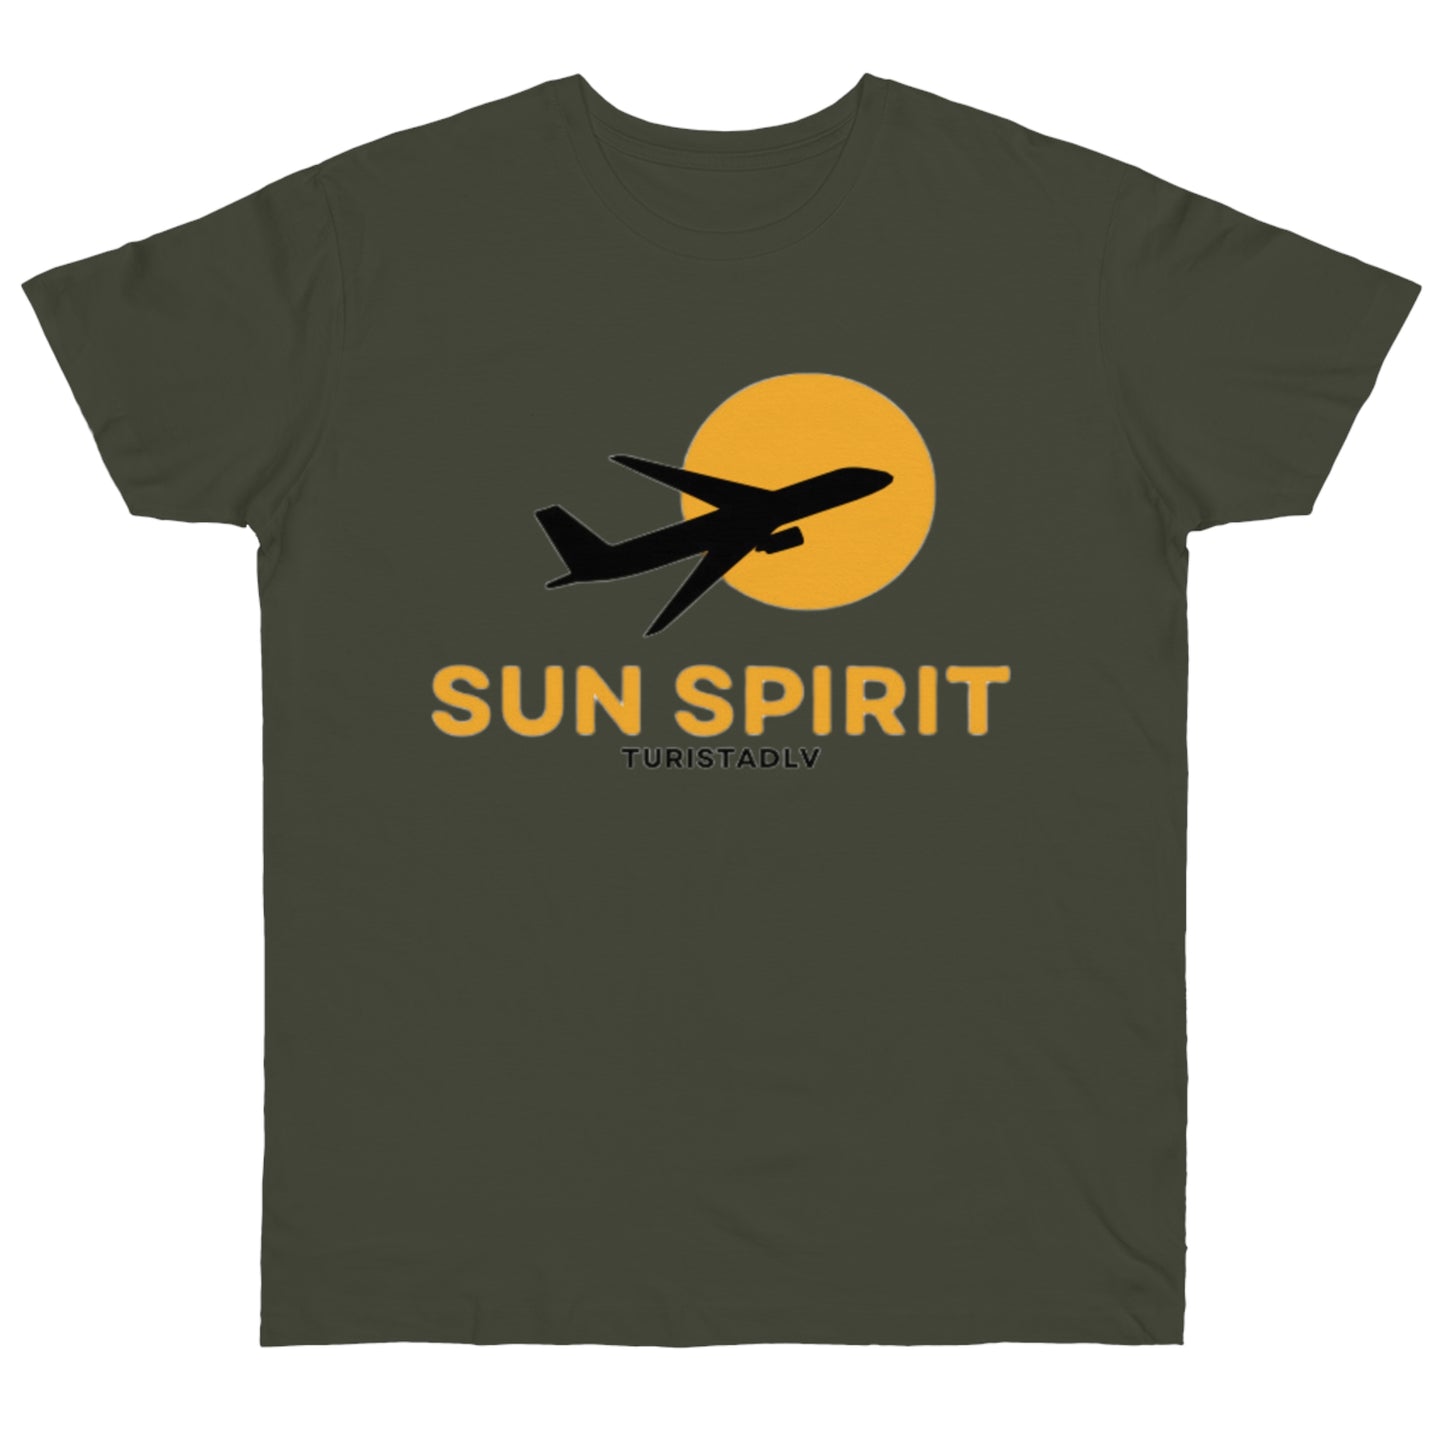 Camiseta de avión, sol, camiseta de piloto, camisa de viajero, camiseta inspiradora, camiseta de sol, libertad, regalo, aviación, viaje